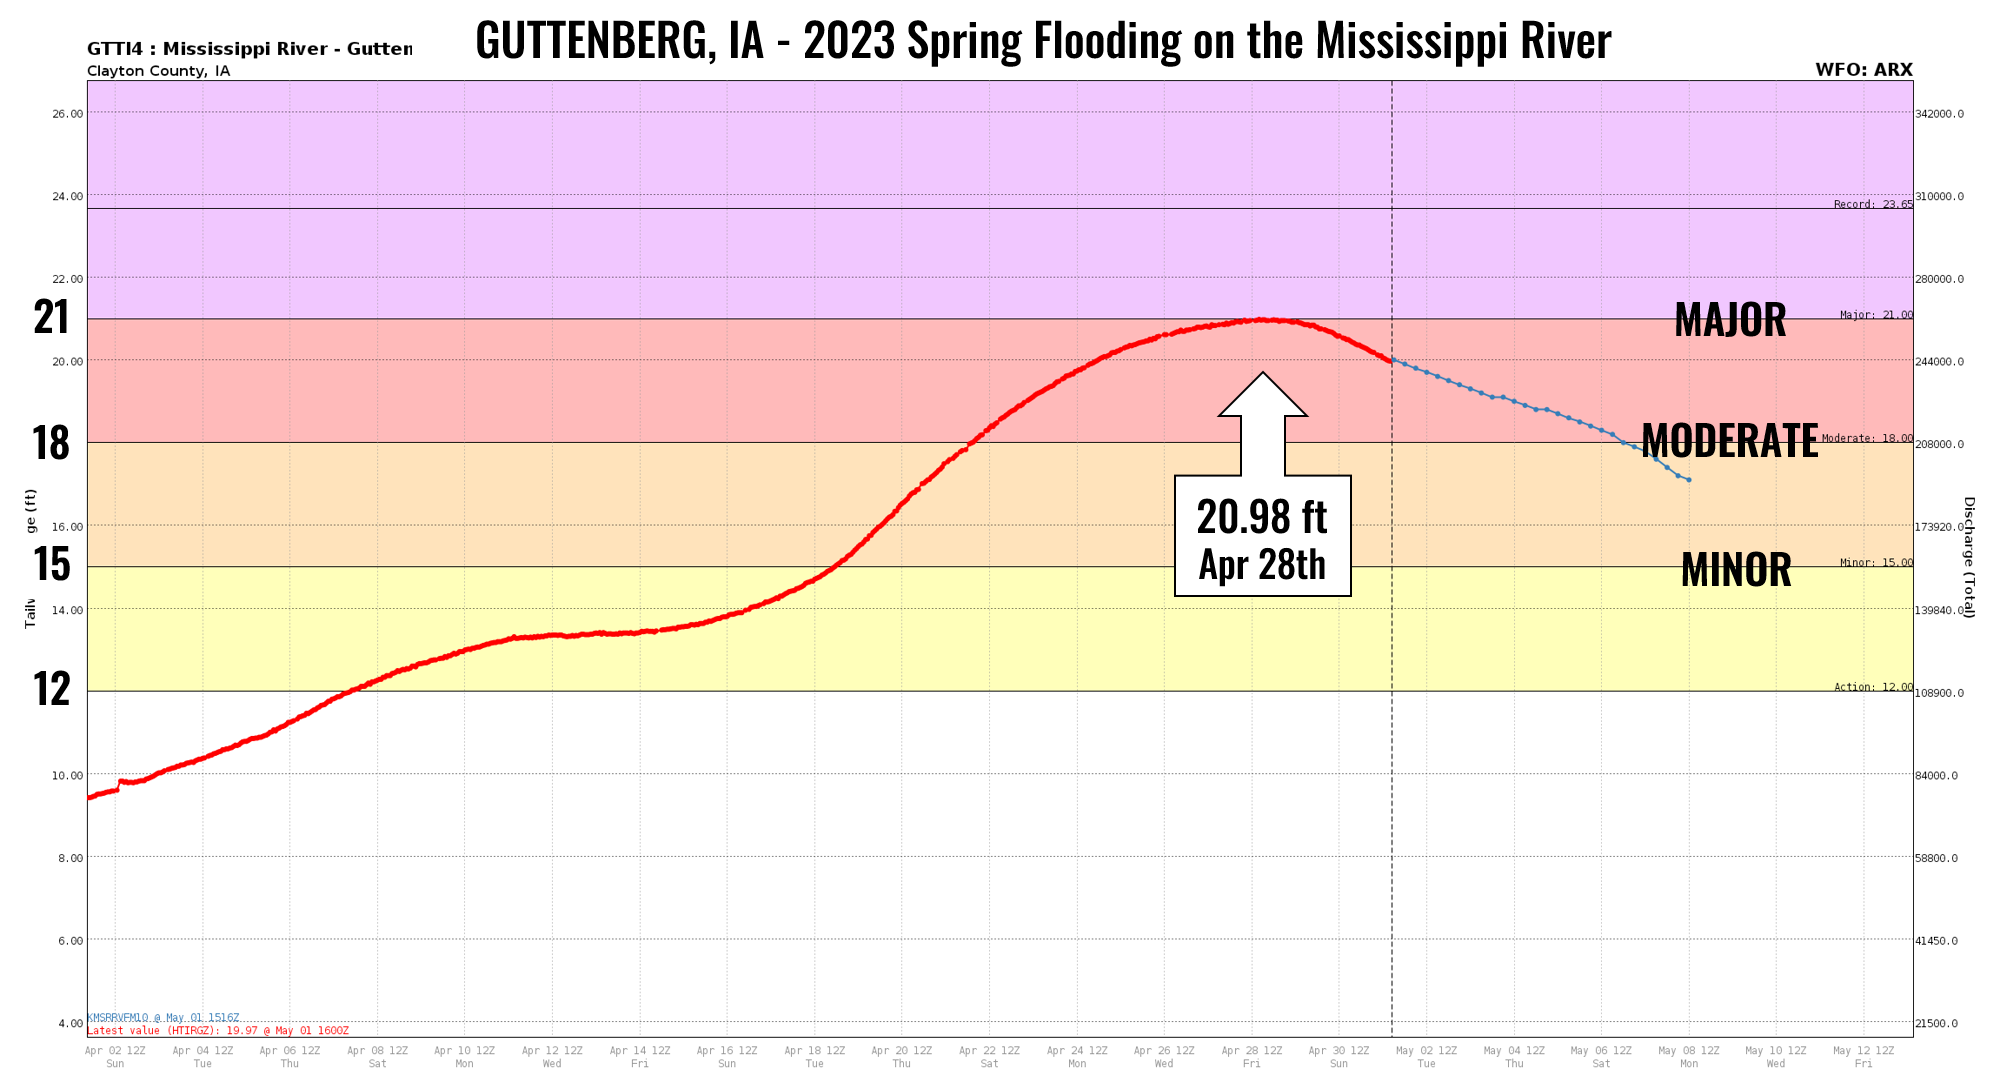 Guttenberg hydrograph 2023 flooding